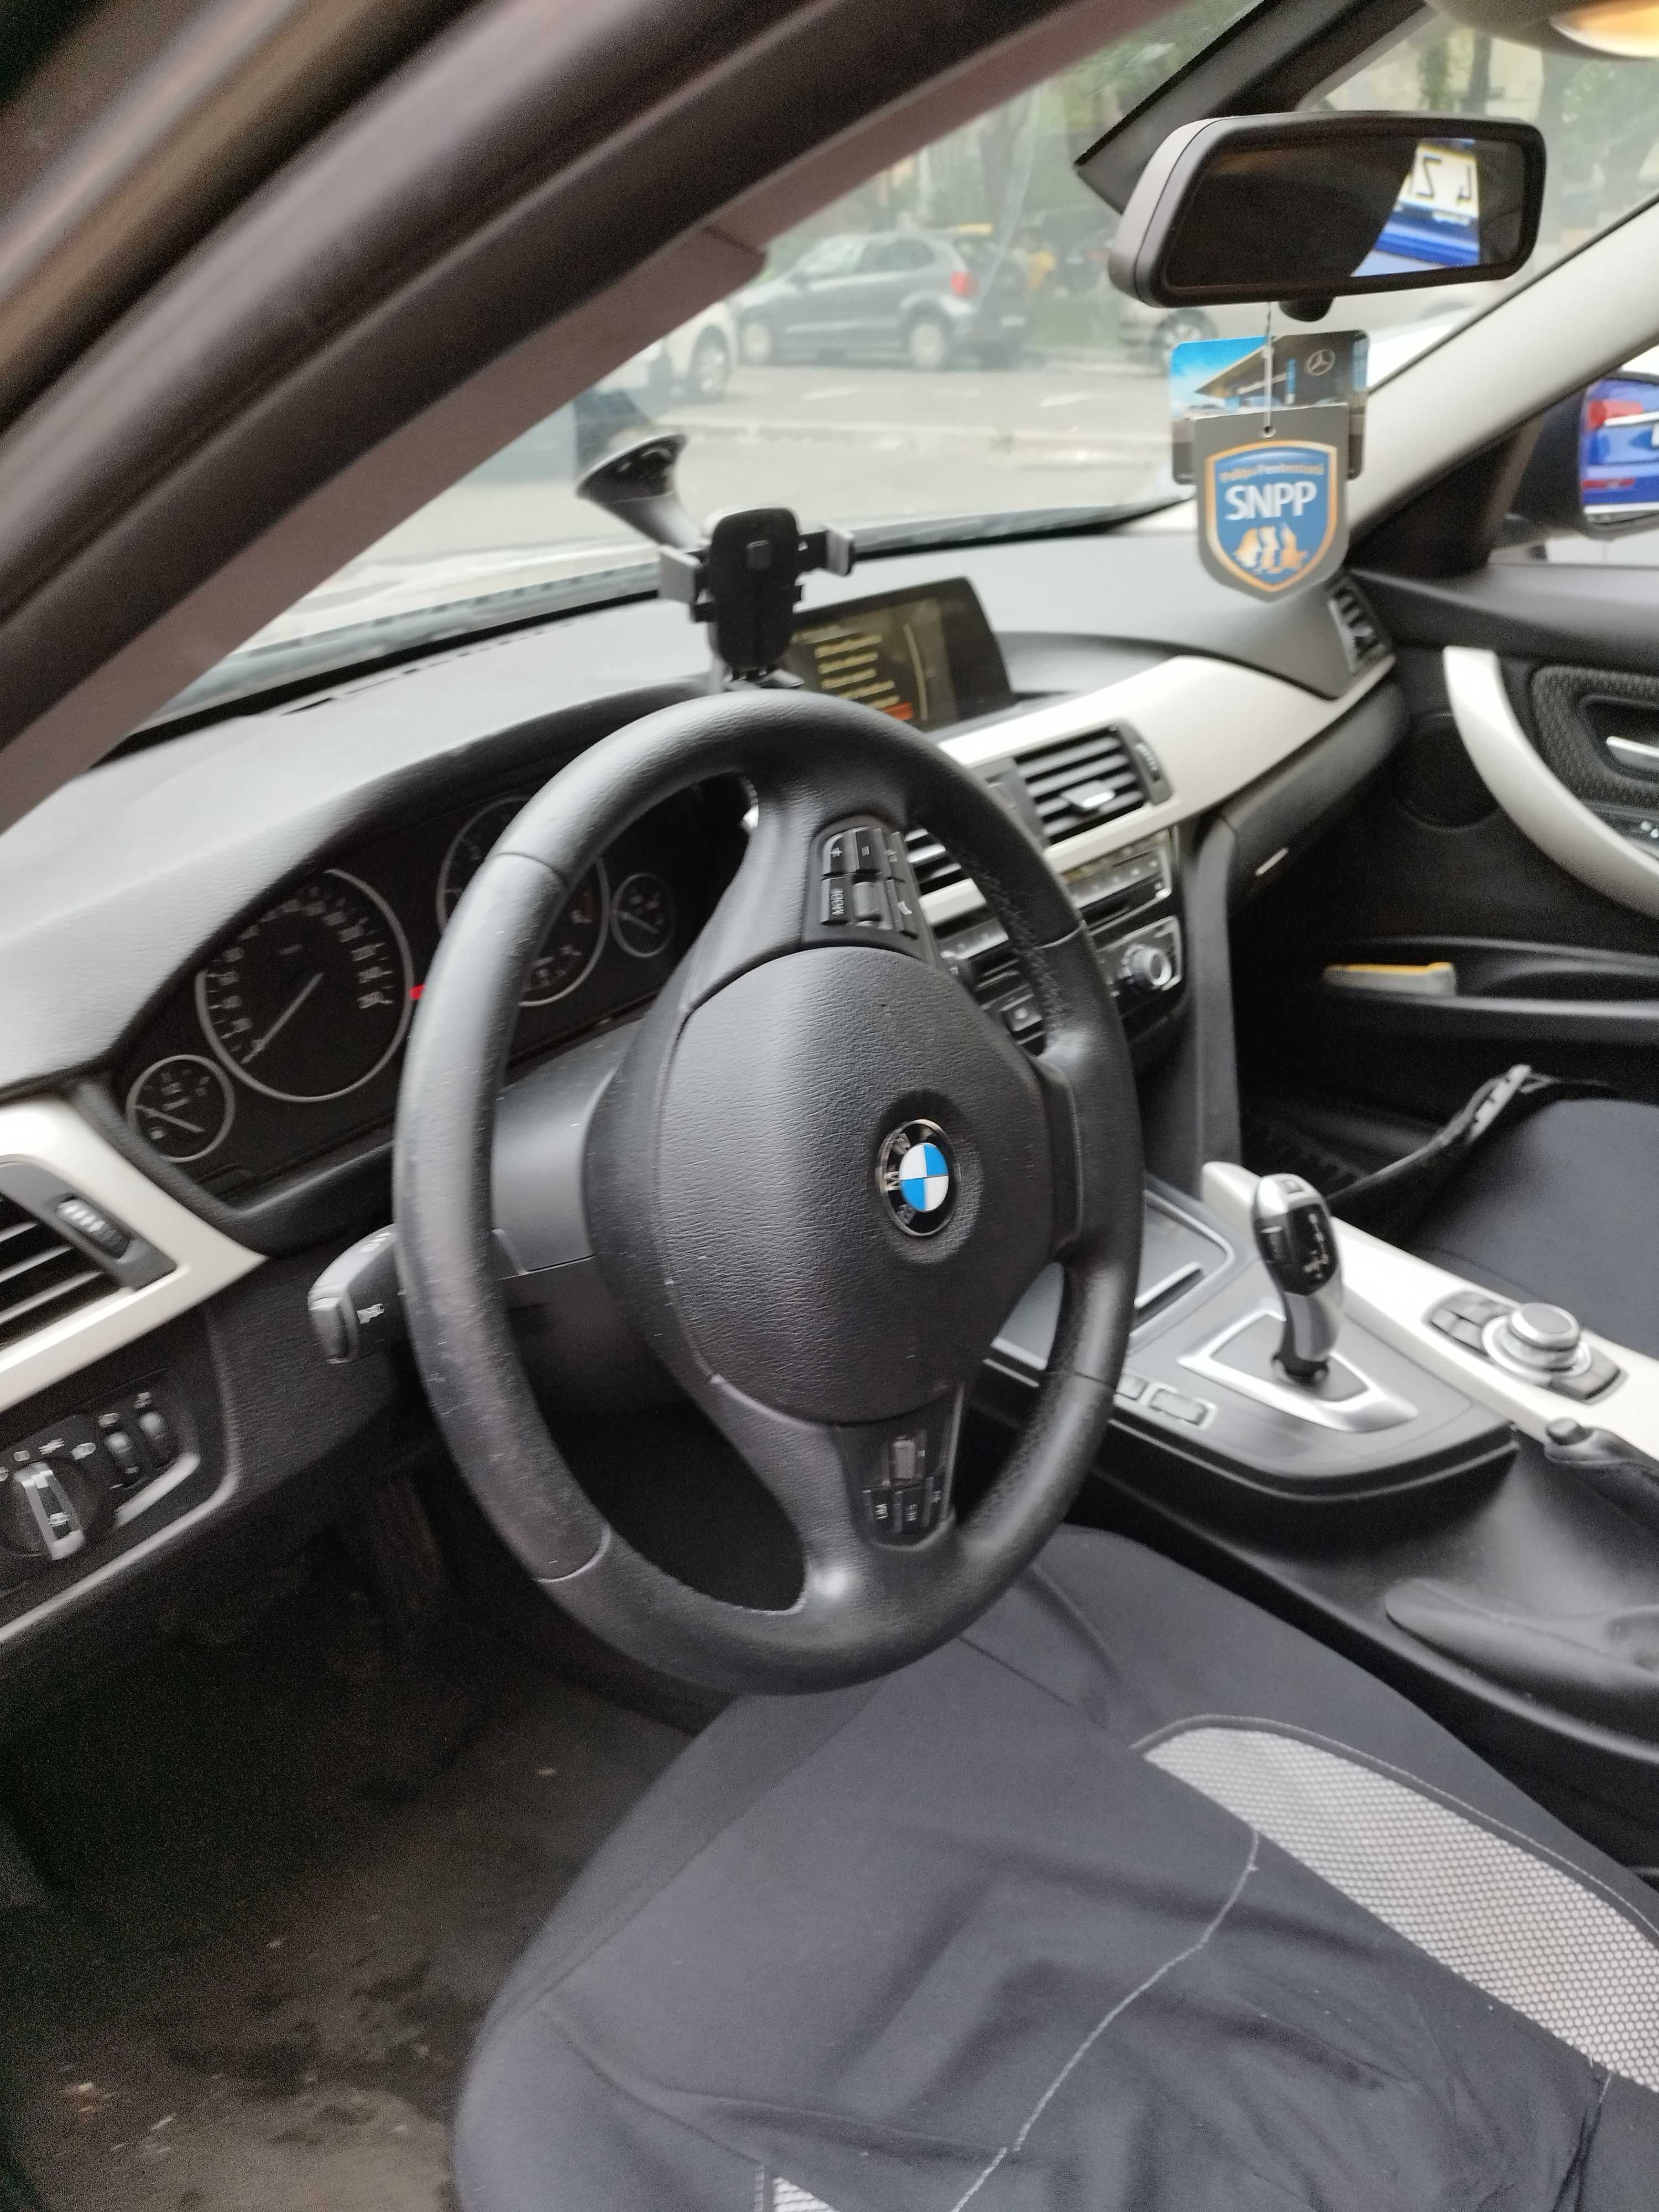 VAND BMW 316,an de fabricatie 2016